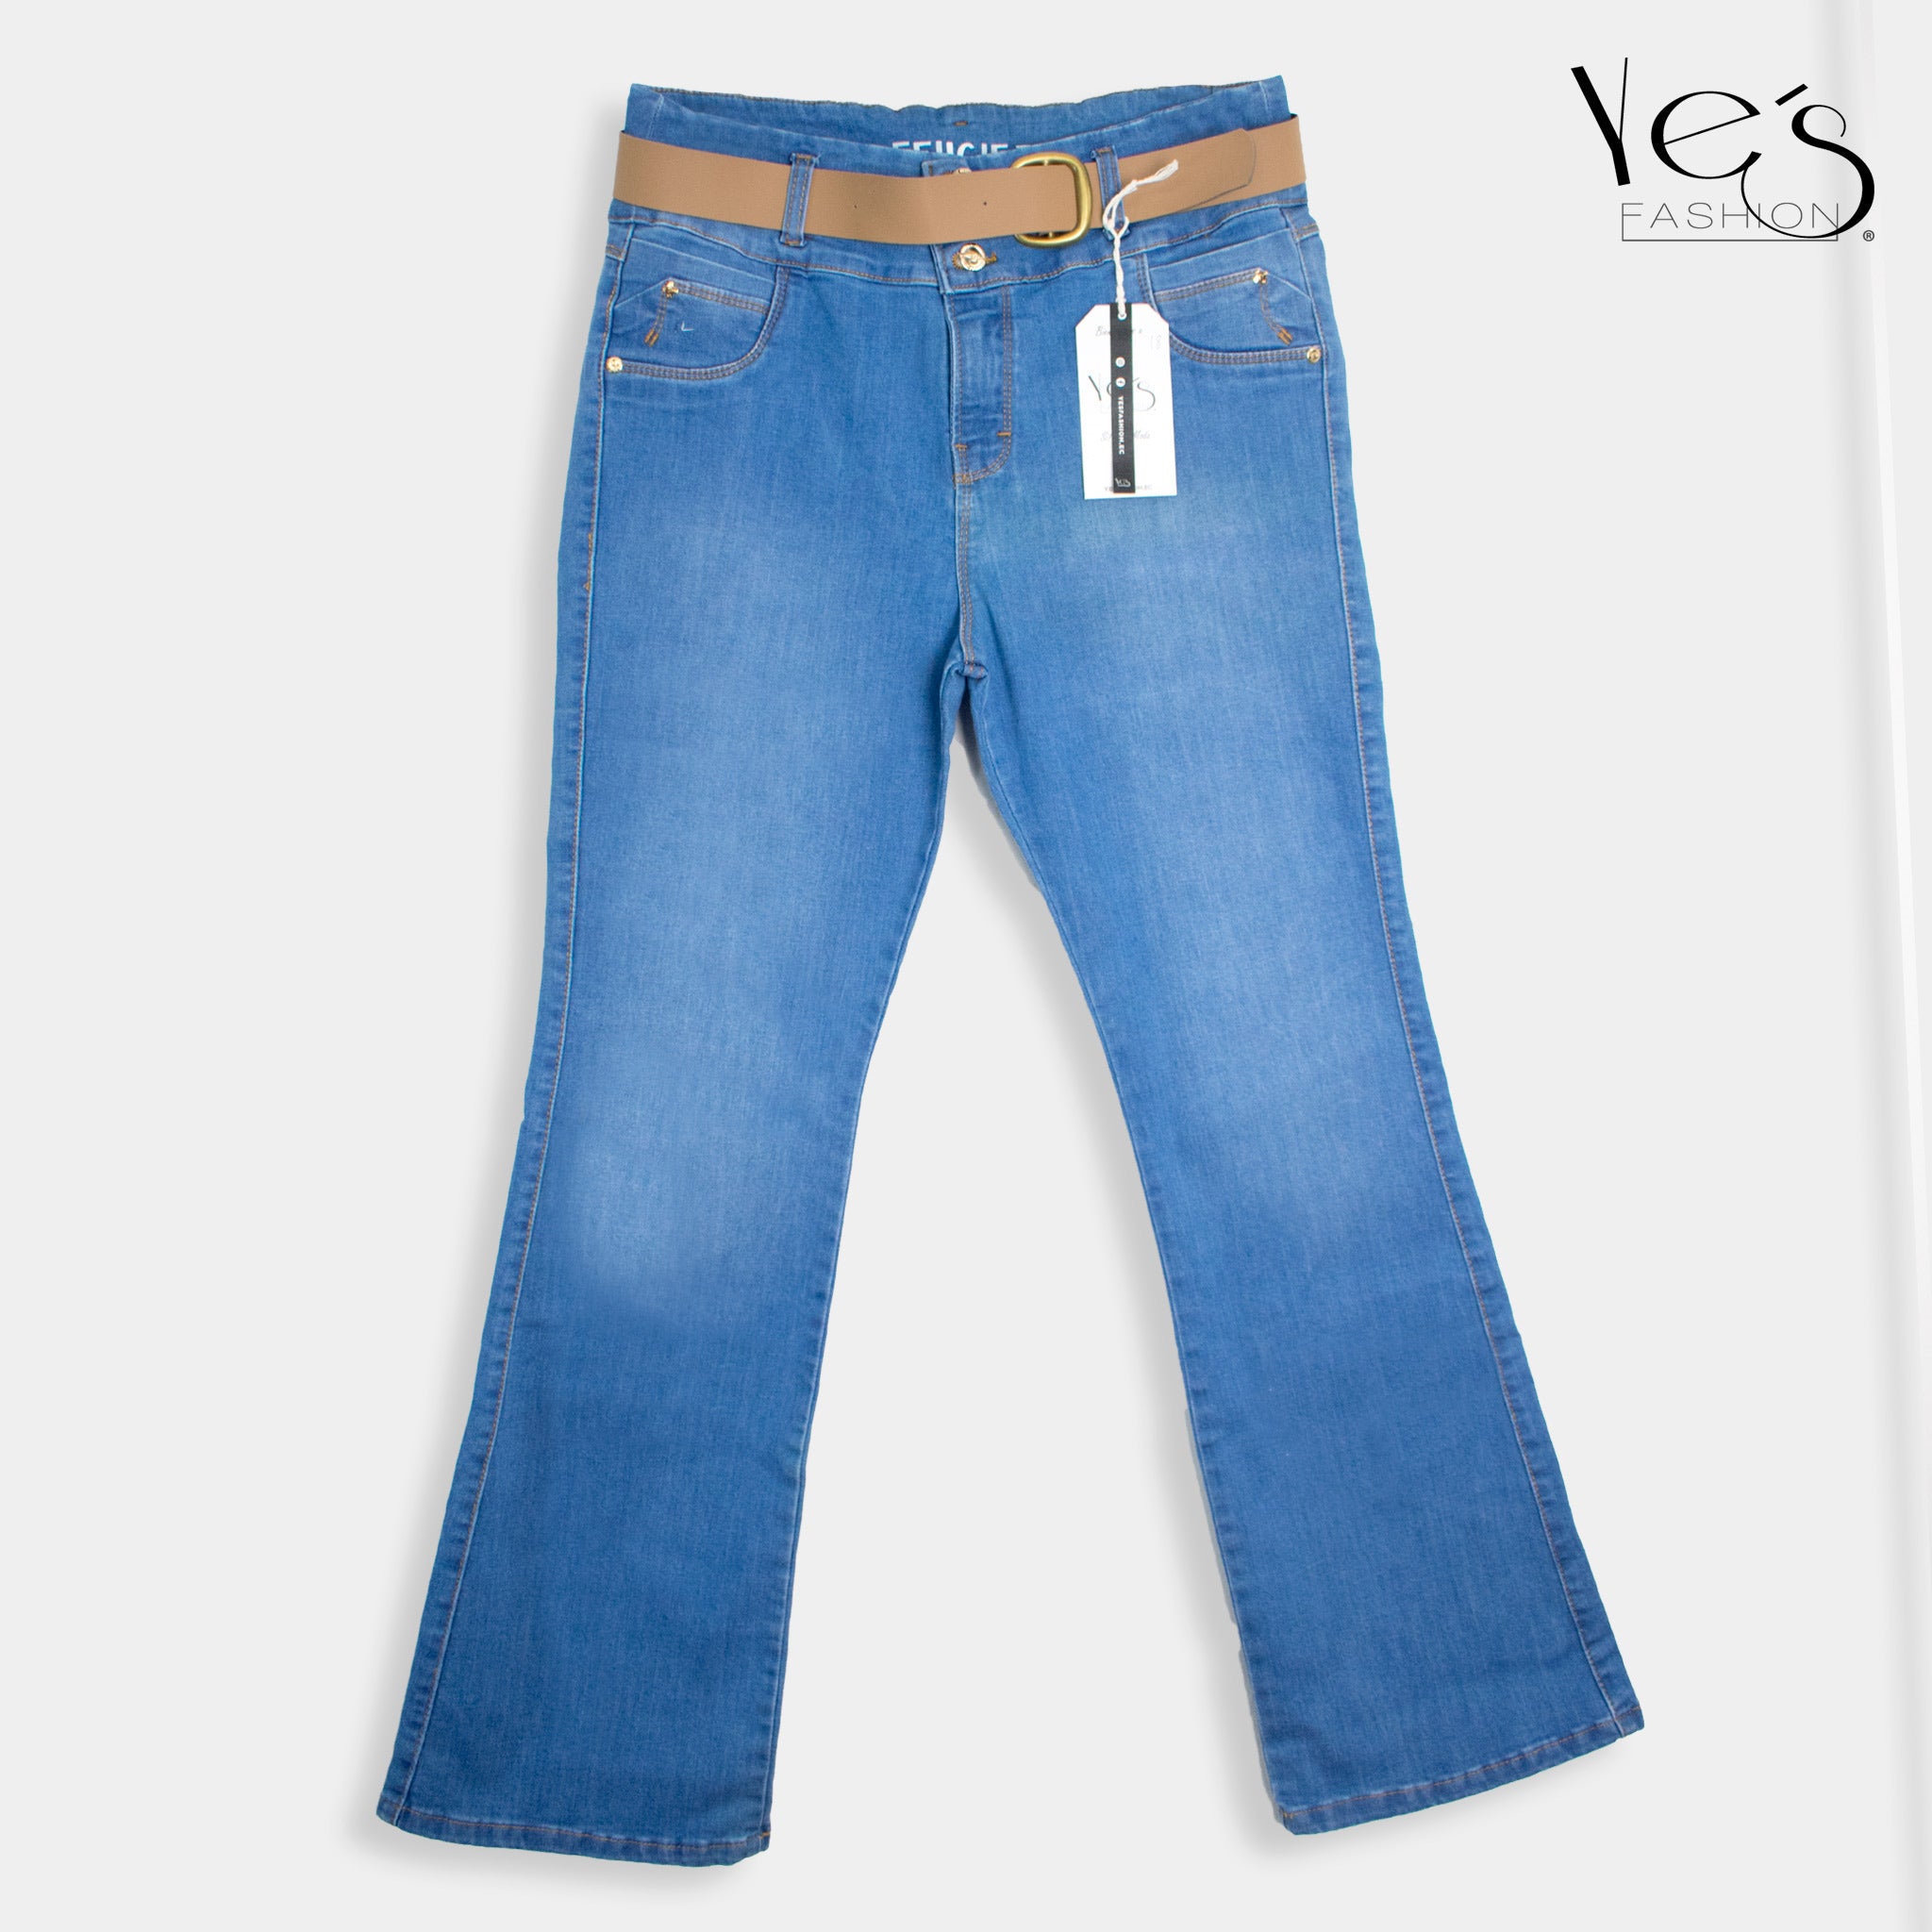 Jeans Acampanados Plus Size - Estilo Moderno con Basta Acampanada - (Color: Azul Claro )